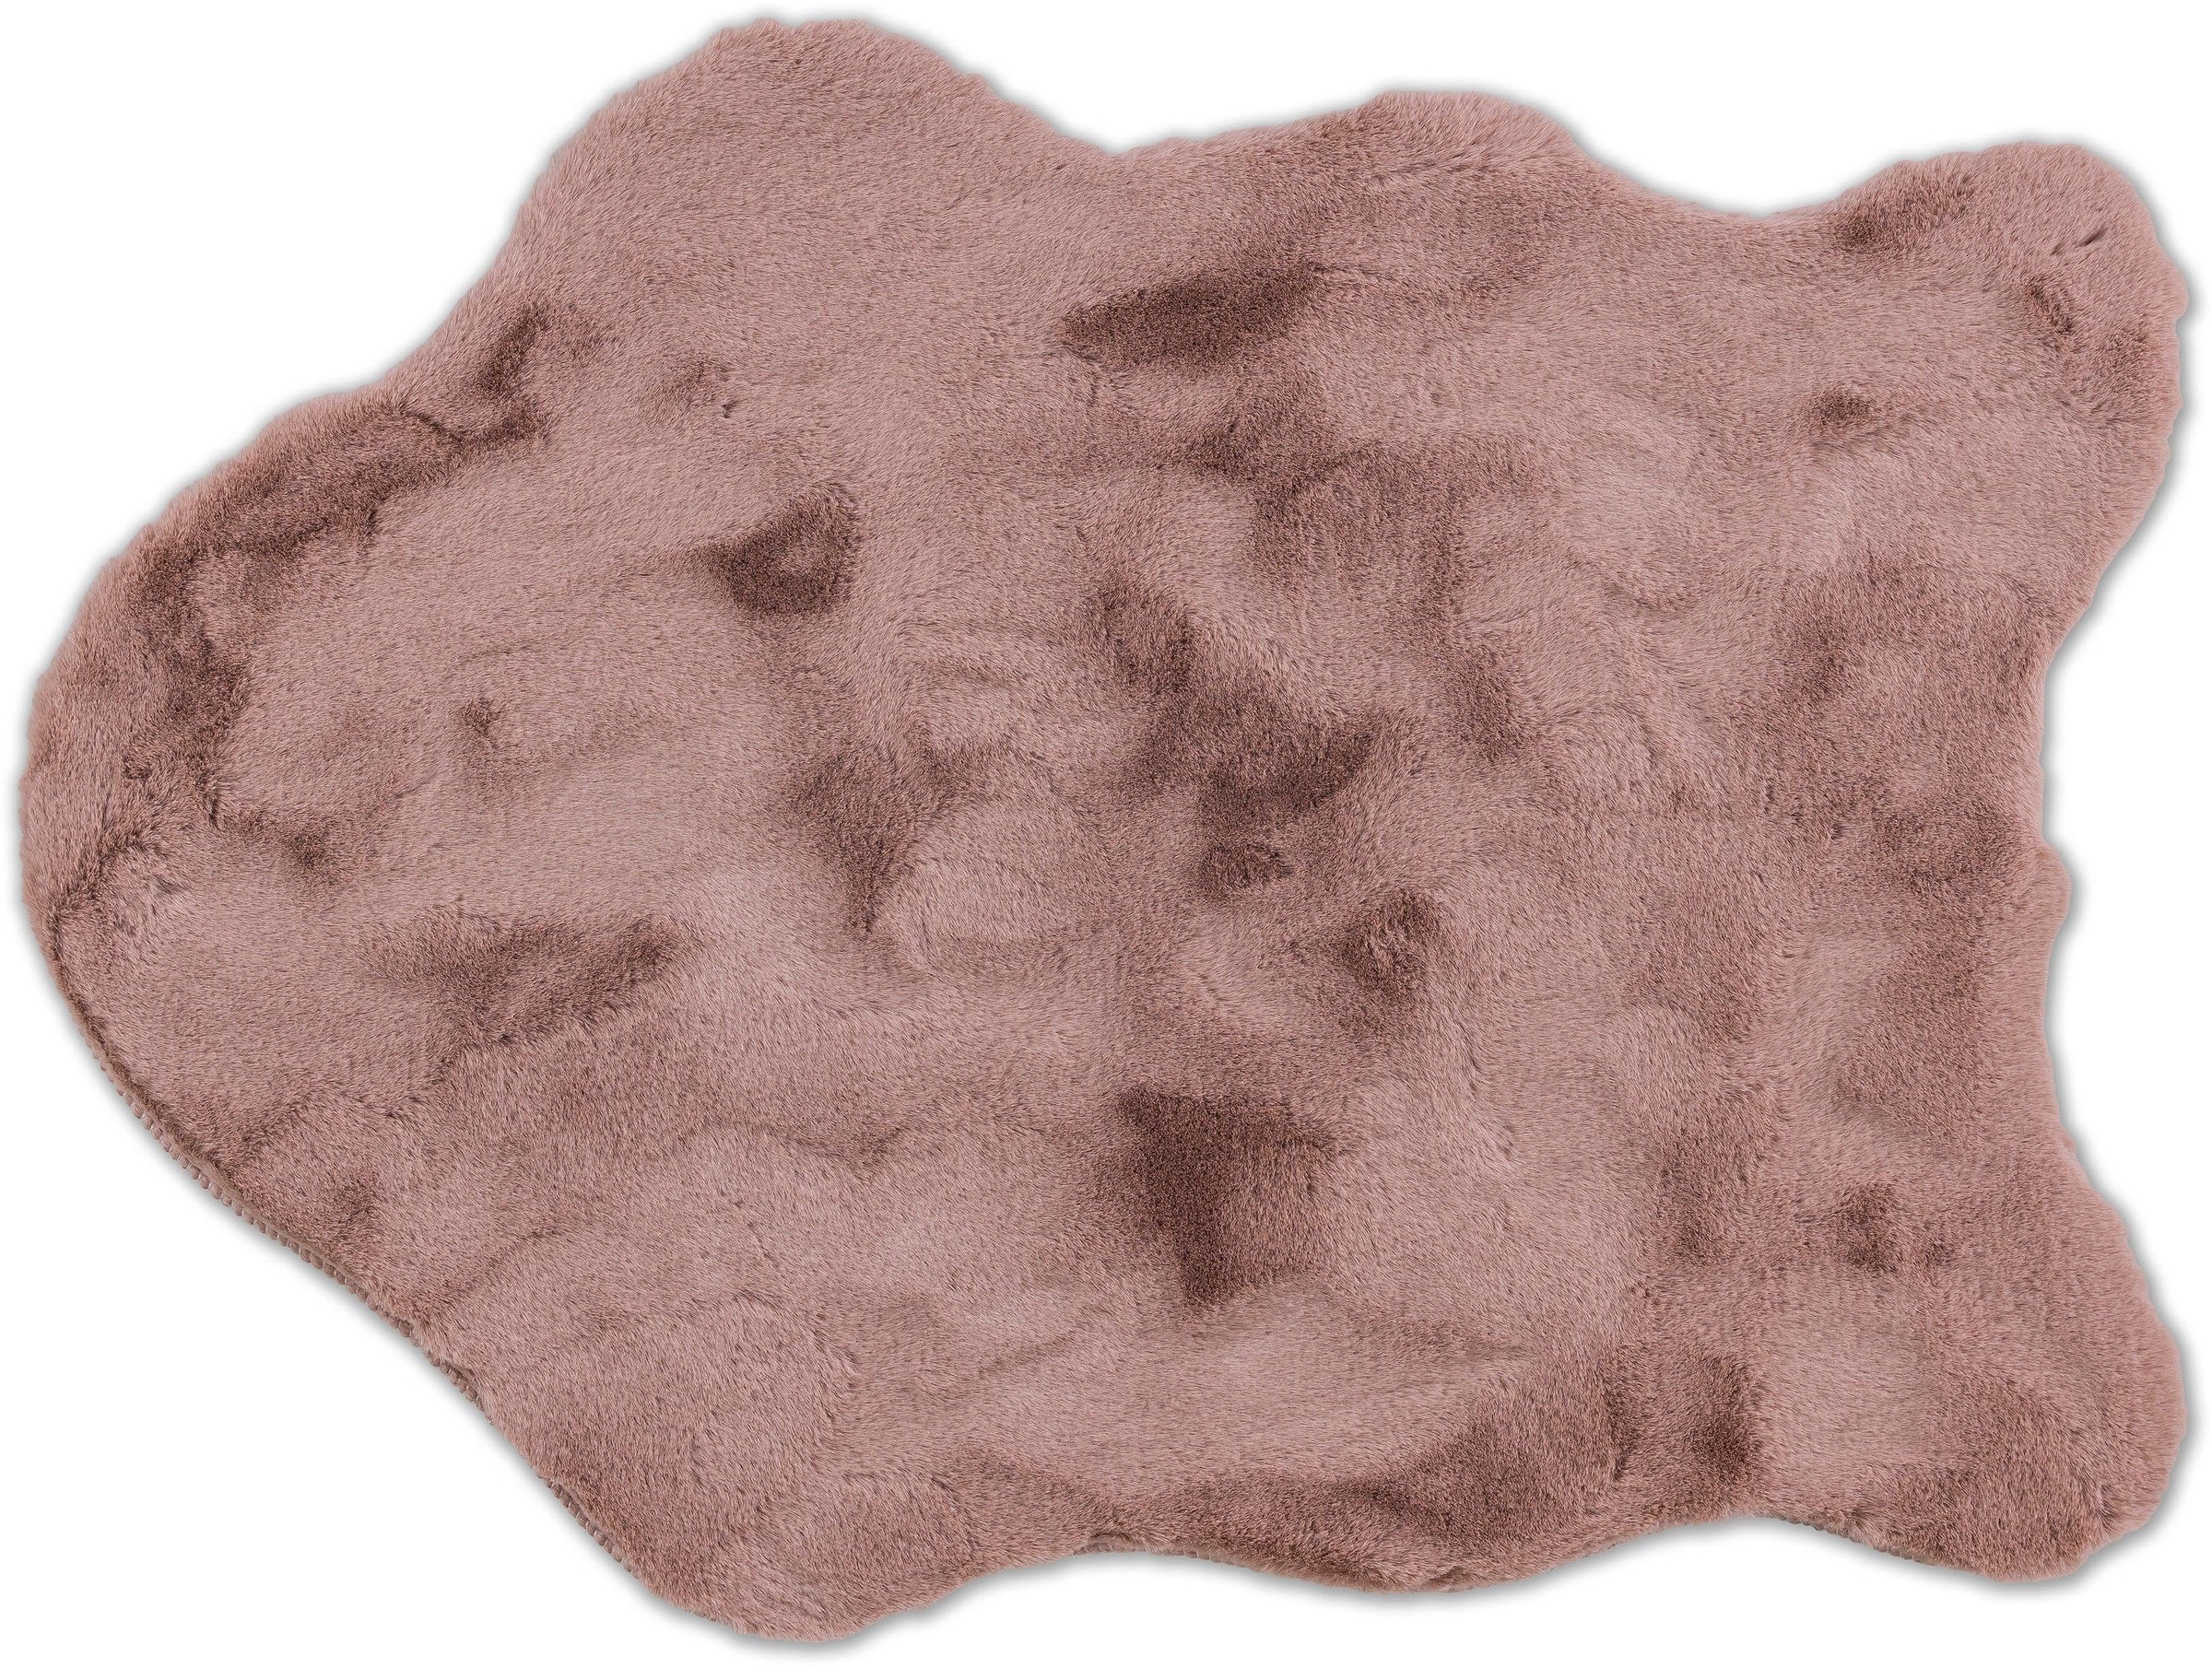 SCHÖNER WOHNEN-Kollektion Fellteppich »Tender«, fellförmig, weich durch Microfaser, Kaninchenfell Haptik, Kunstfell, waschbar